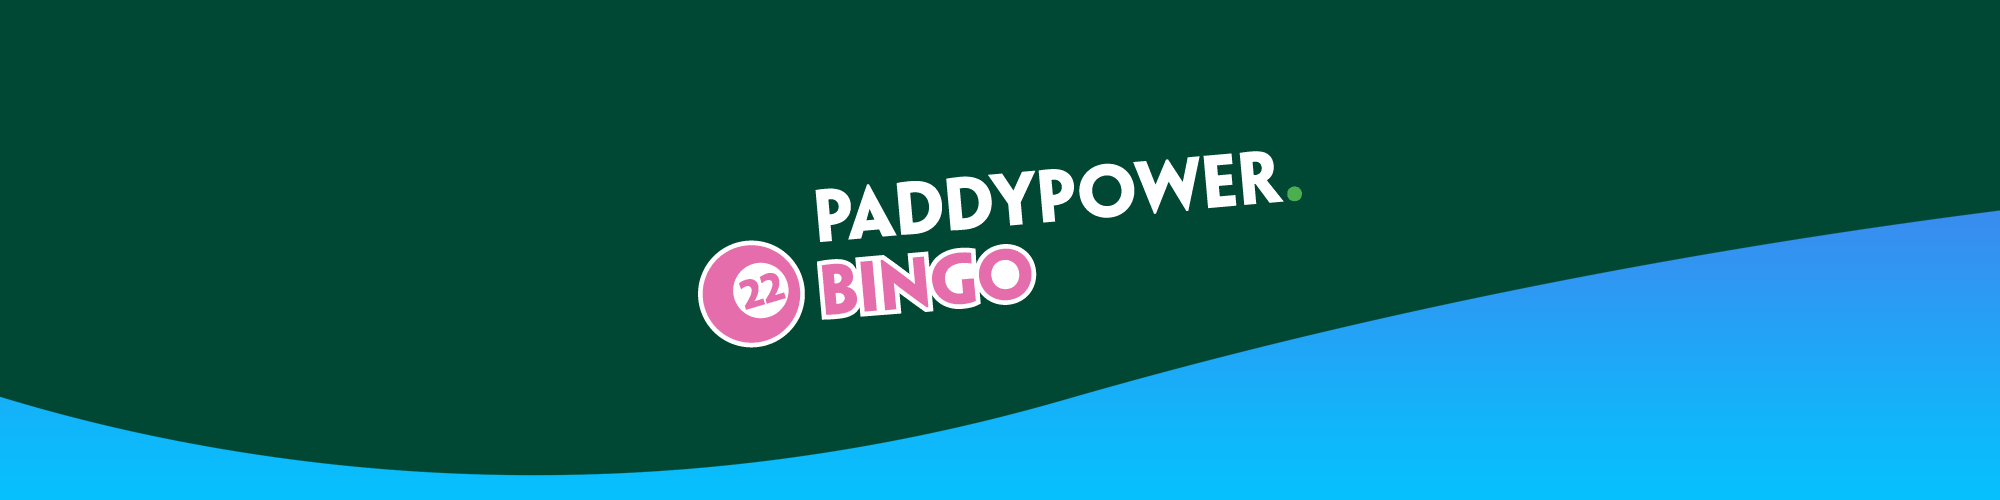 Paddy Power Bingo Alternative on EazeGames